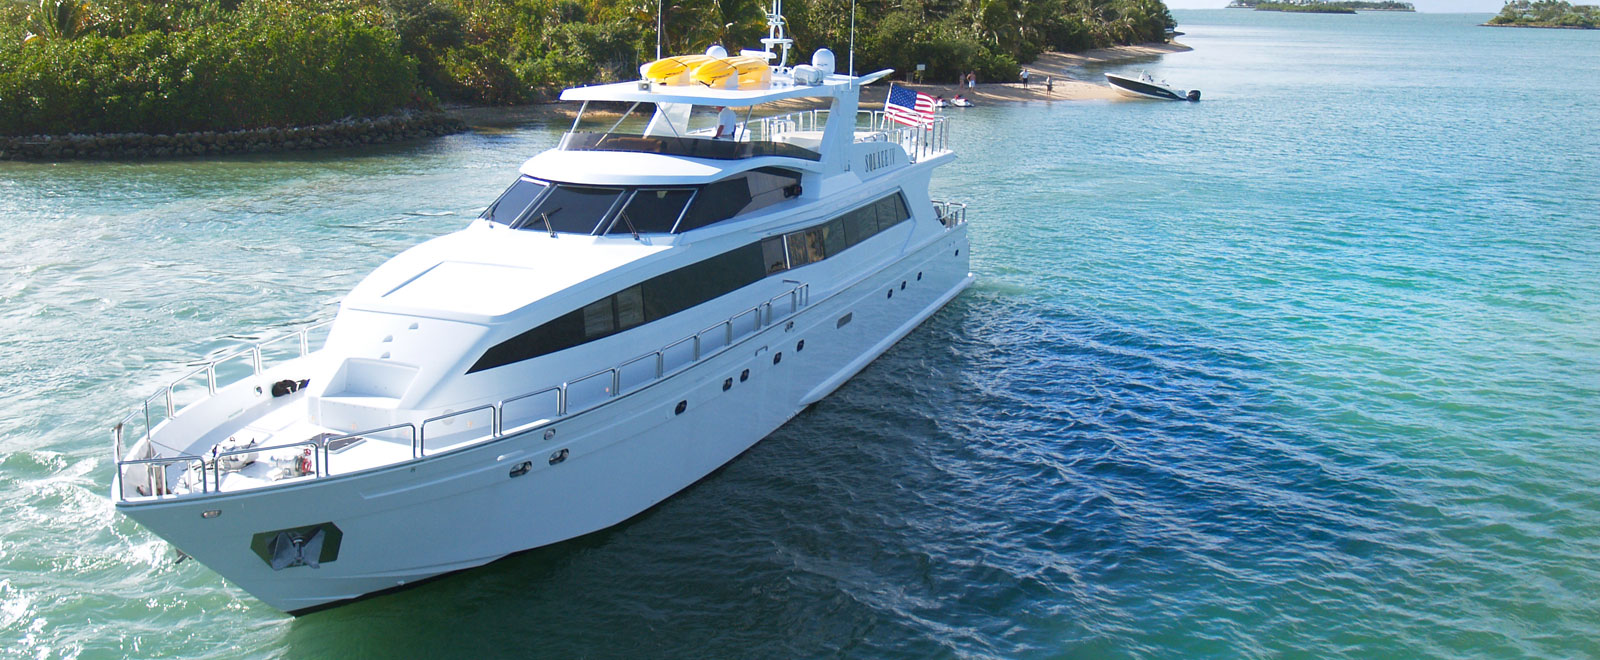 reardon yacht consulting llc